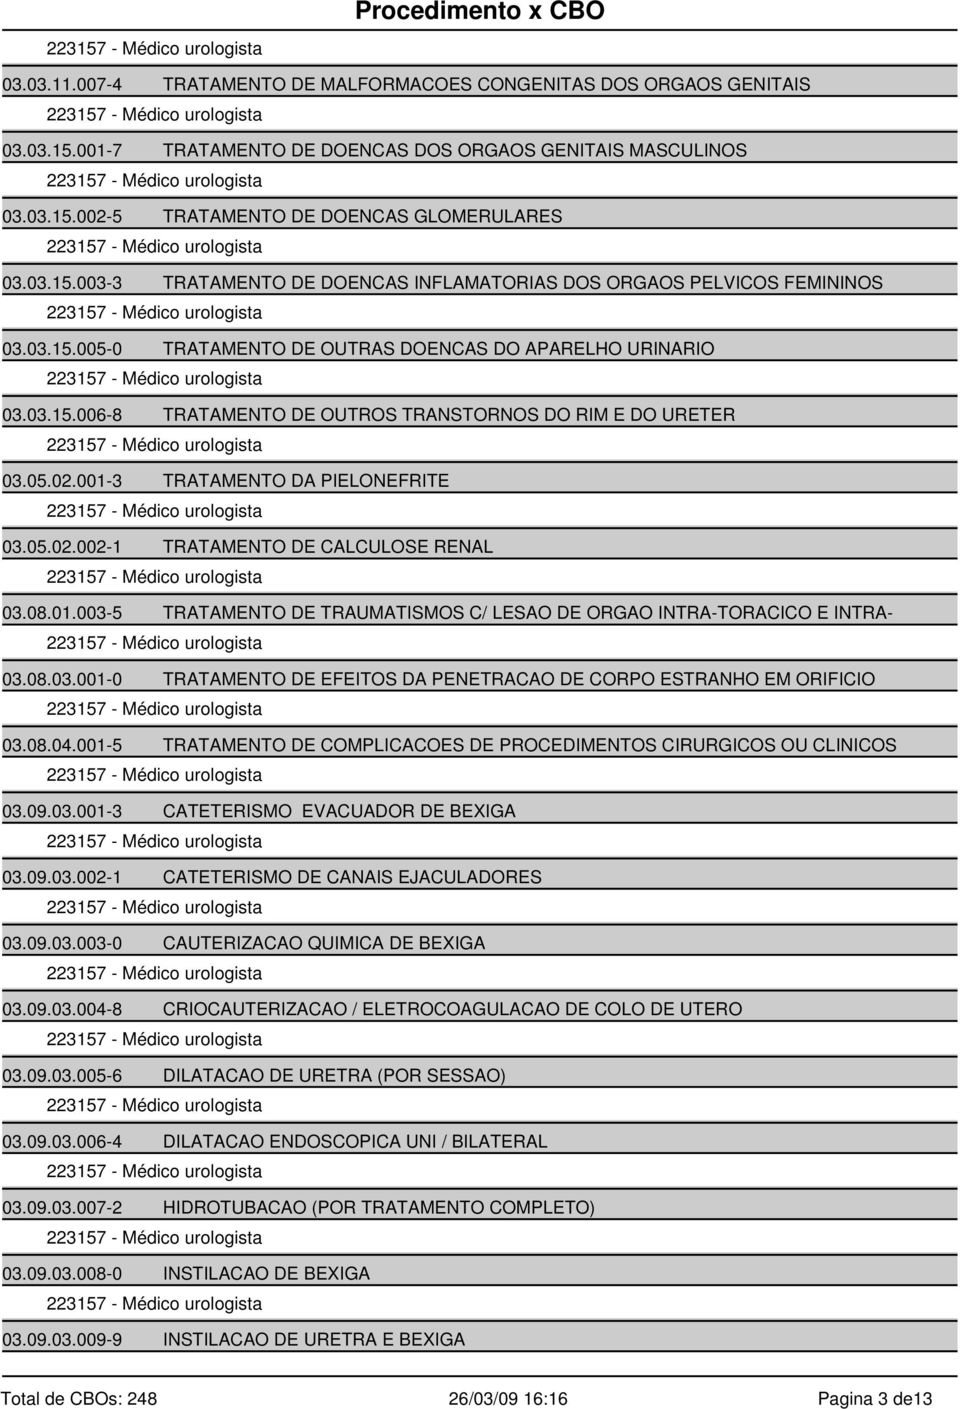 08.01.003-5 TRATAMENTO DE TRAUMATISMOS C/ LESAO DE ORGAO INTRA-TORACICO E INTRA- 03.08.03.001-0 TRATAMENTO DE EFEITOS DA PENETRACAO DE CORPO ESTRANHO EM ORIFICIO 03.08.04.